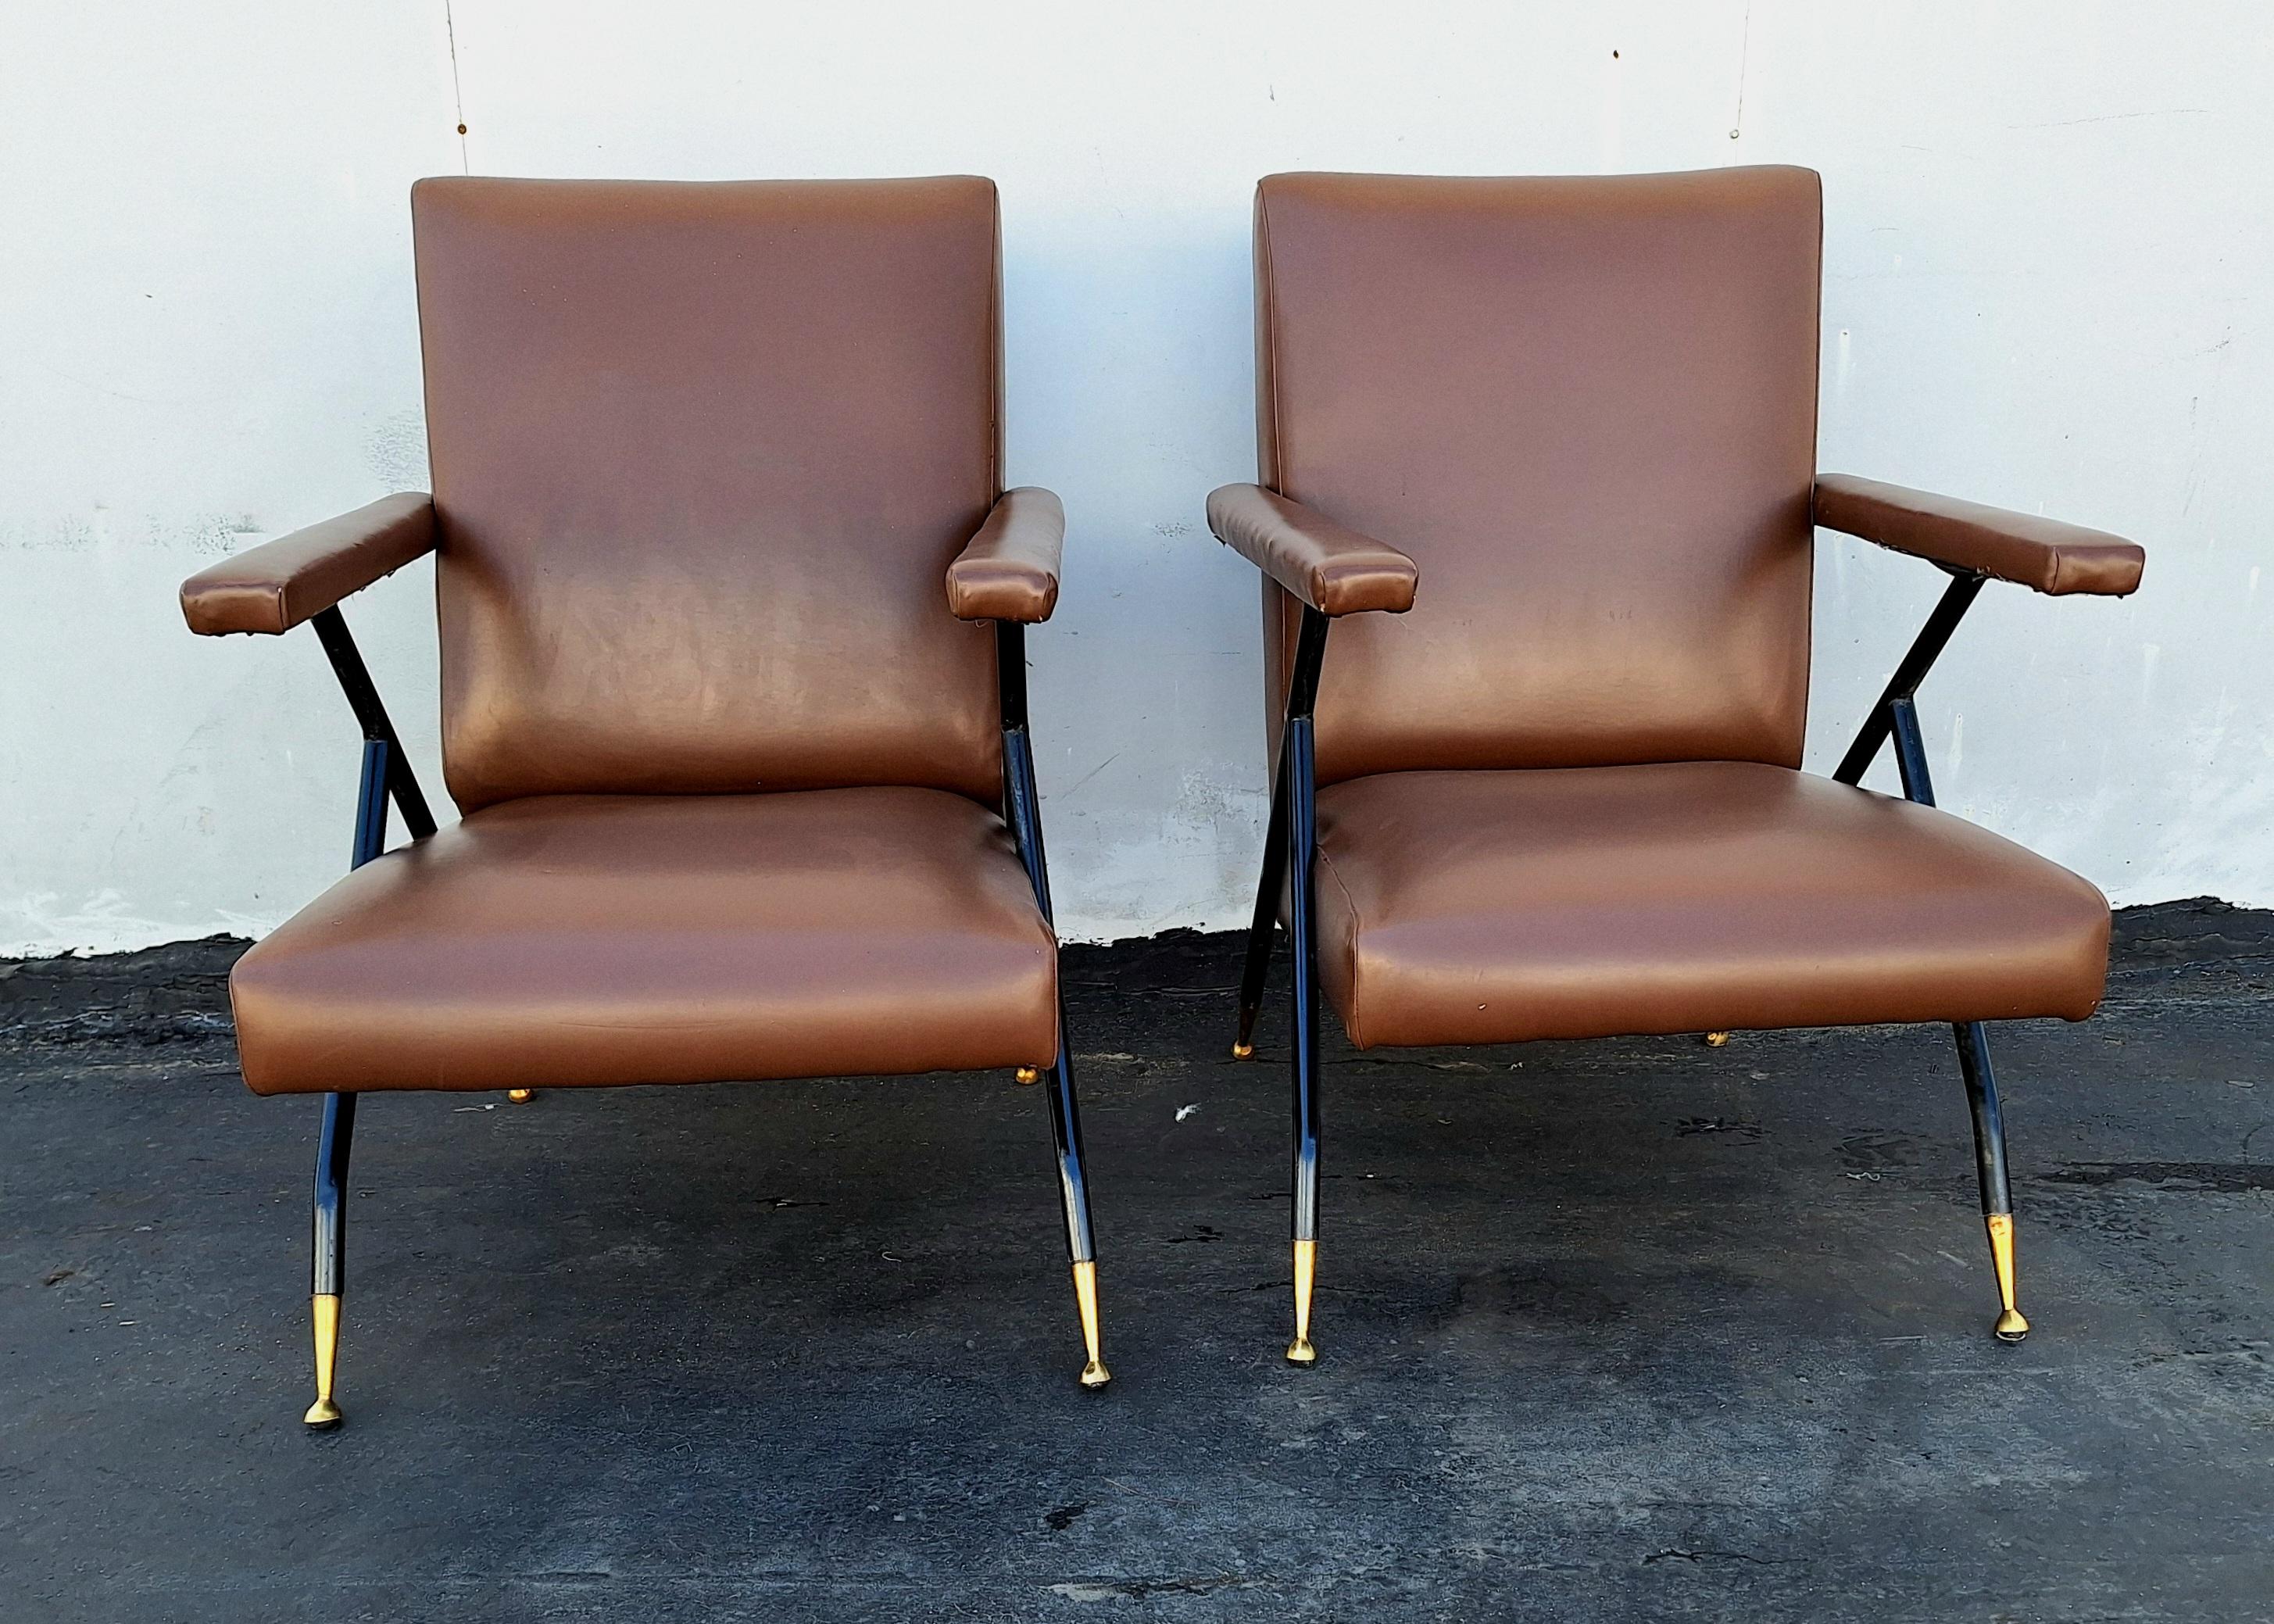 Chaises italiennes du milieu du siècle, structure en métal  pieds en laiton  Les chaises sont confortables et typiques de la région.  Design/One du milieu du siècle .  